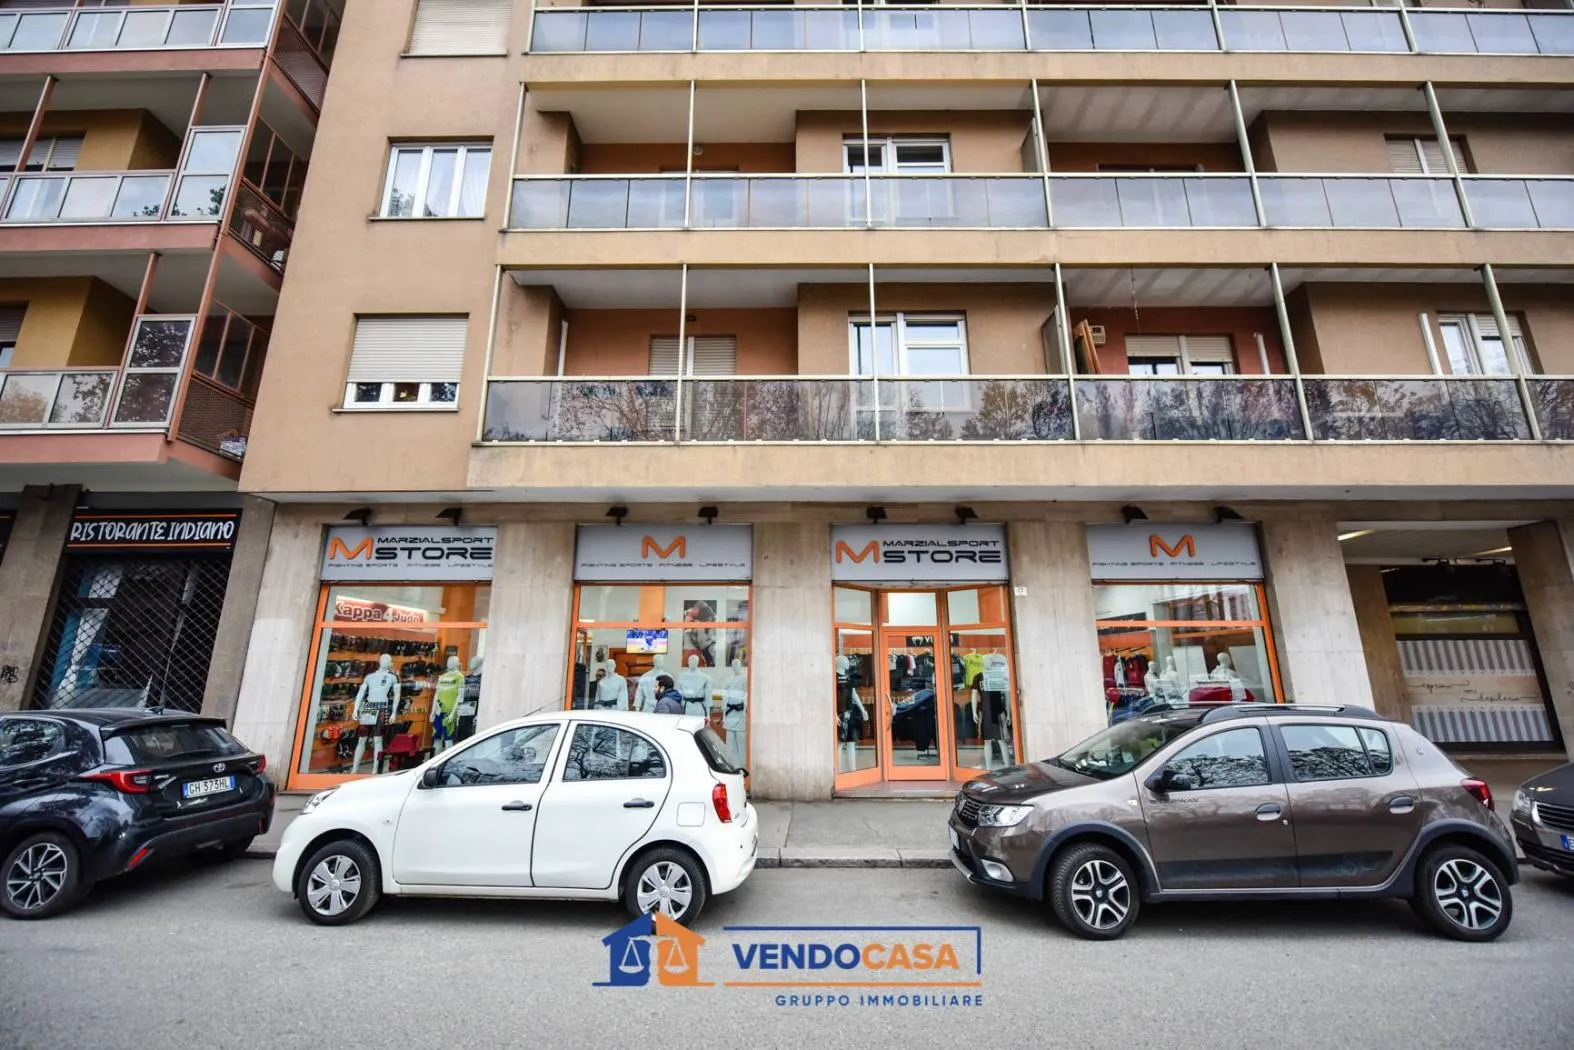 Immagine per Locale Commerciale in Vendita a Torino Corso Francia 276